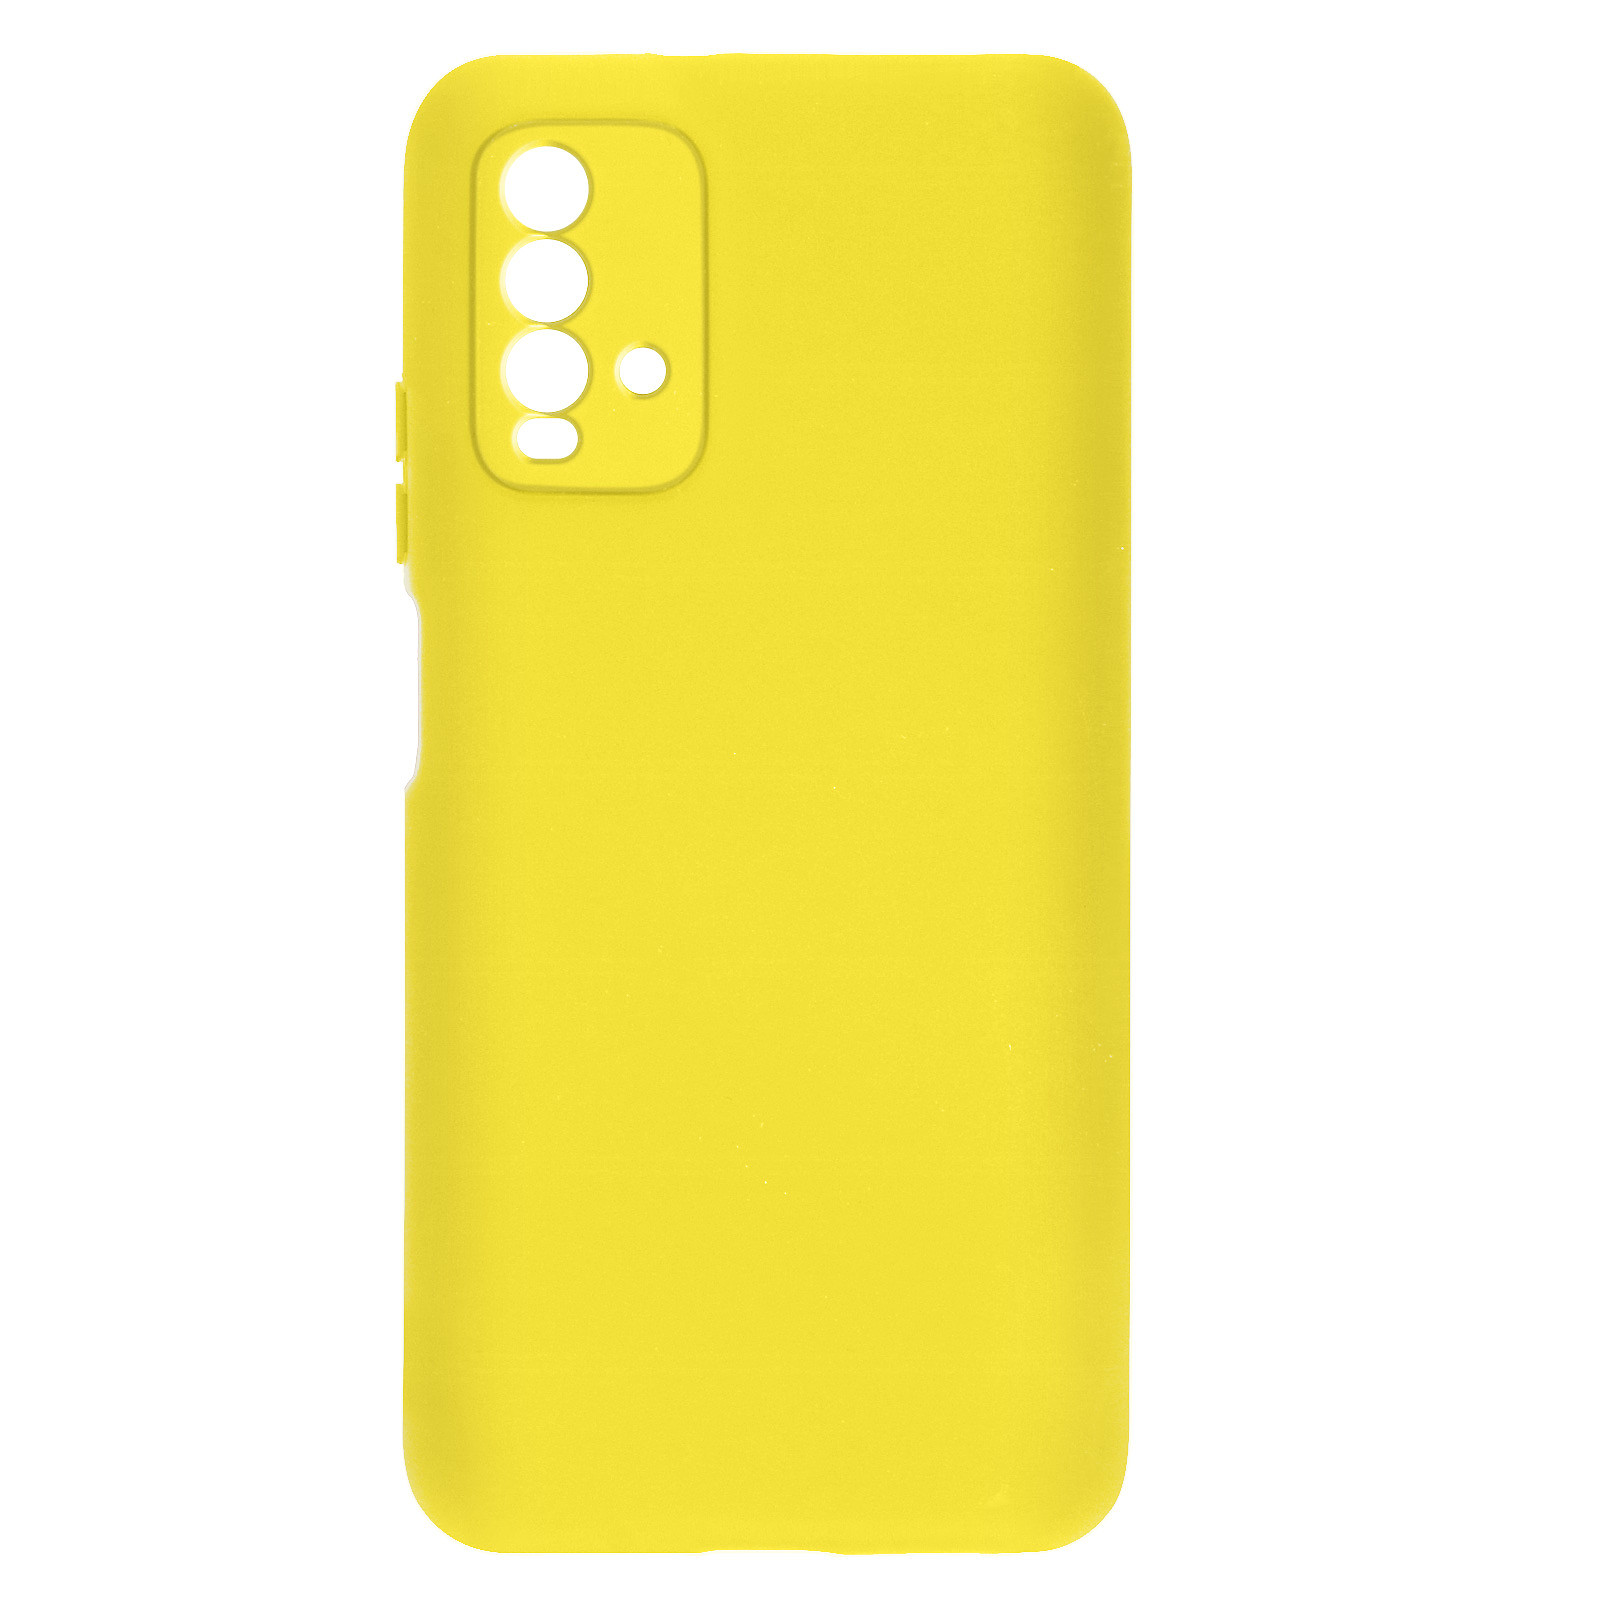 Avizar Coque pour Xiaomi Redmi 9T Silicone Semi-rigide Finition Soft Touch Fine jaune - Coque telephone Avizar